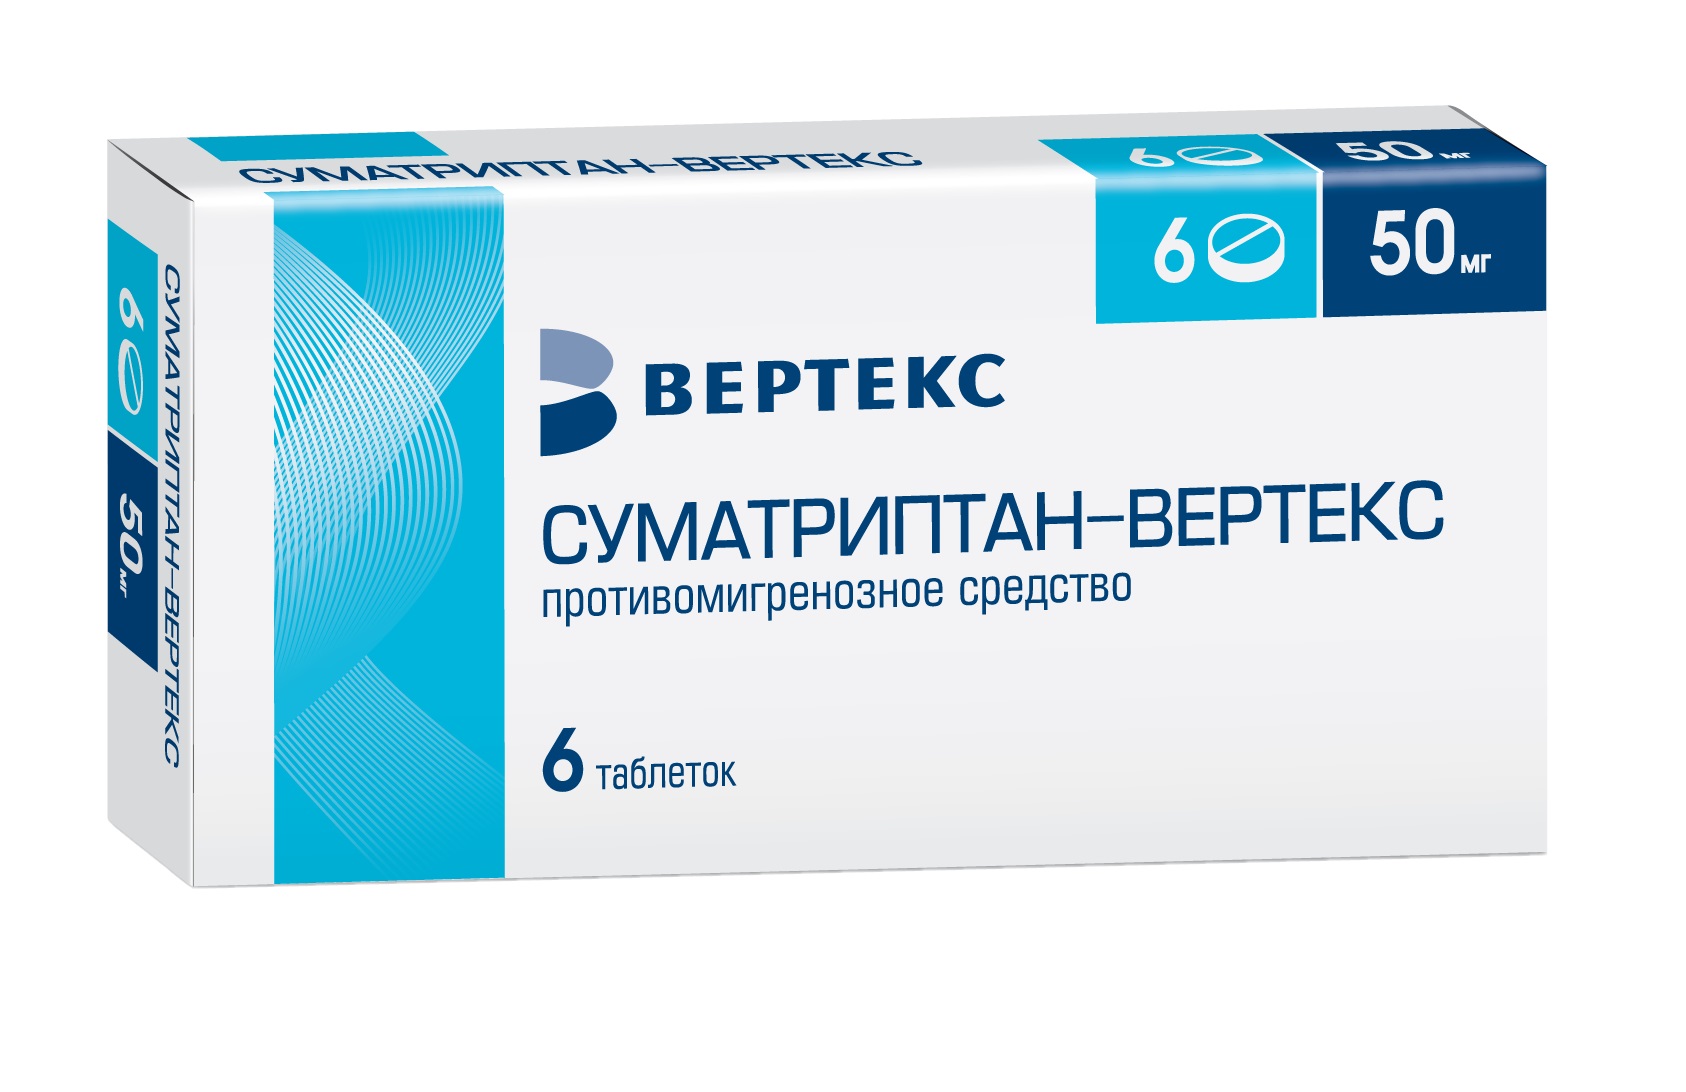 Суматриптан таблетки 50 мг 2 шт купить по цене 158,0 руб в Москве, заказать  лекарство в интернет-аптеке: инструкция по применению, доставка на дом